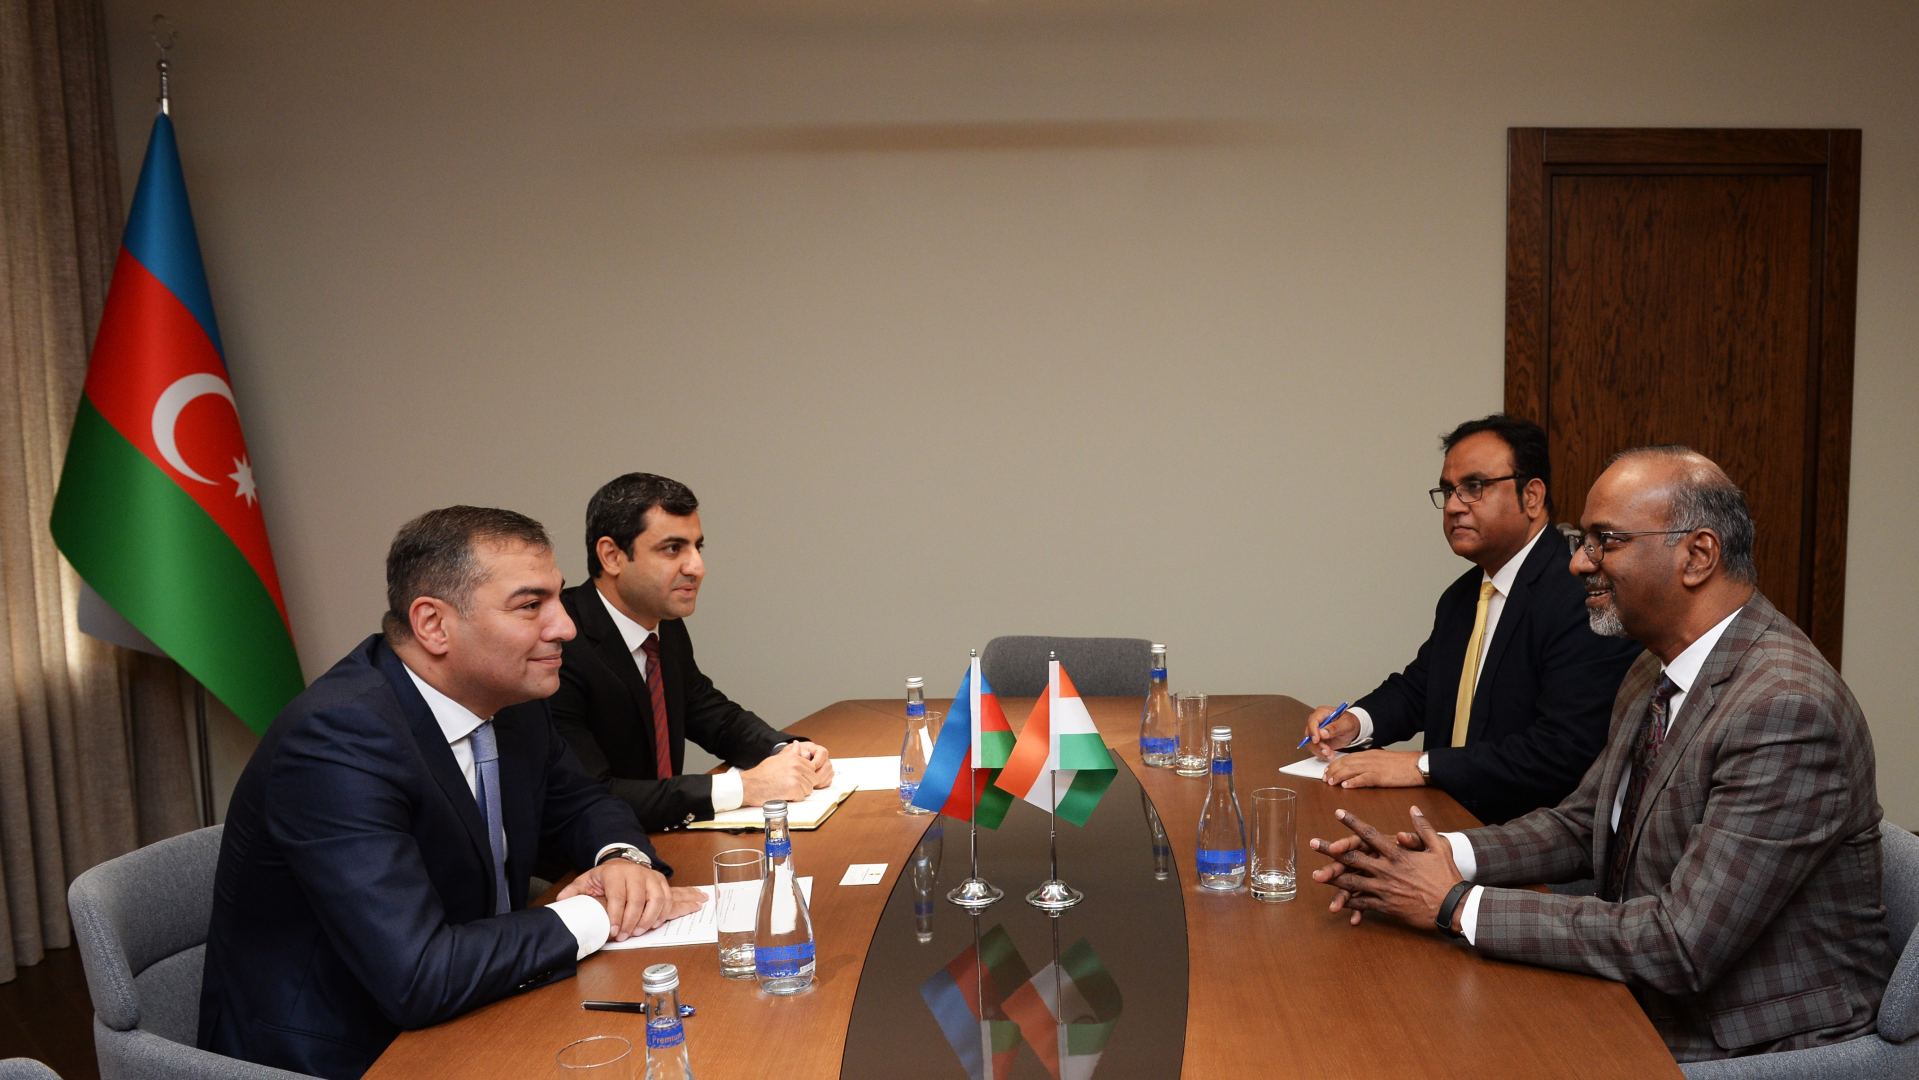 Азербайджан и Индия обсудили перспективы туристического сотрудничества